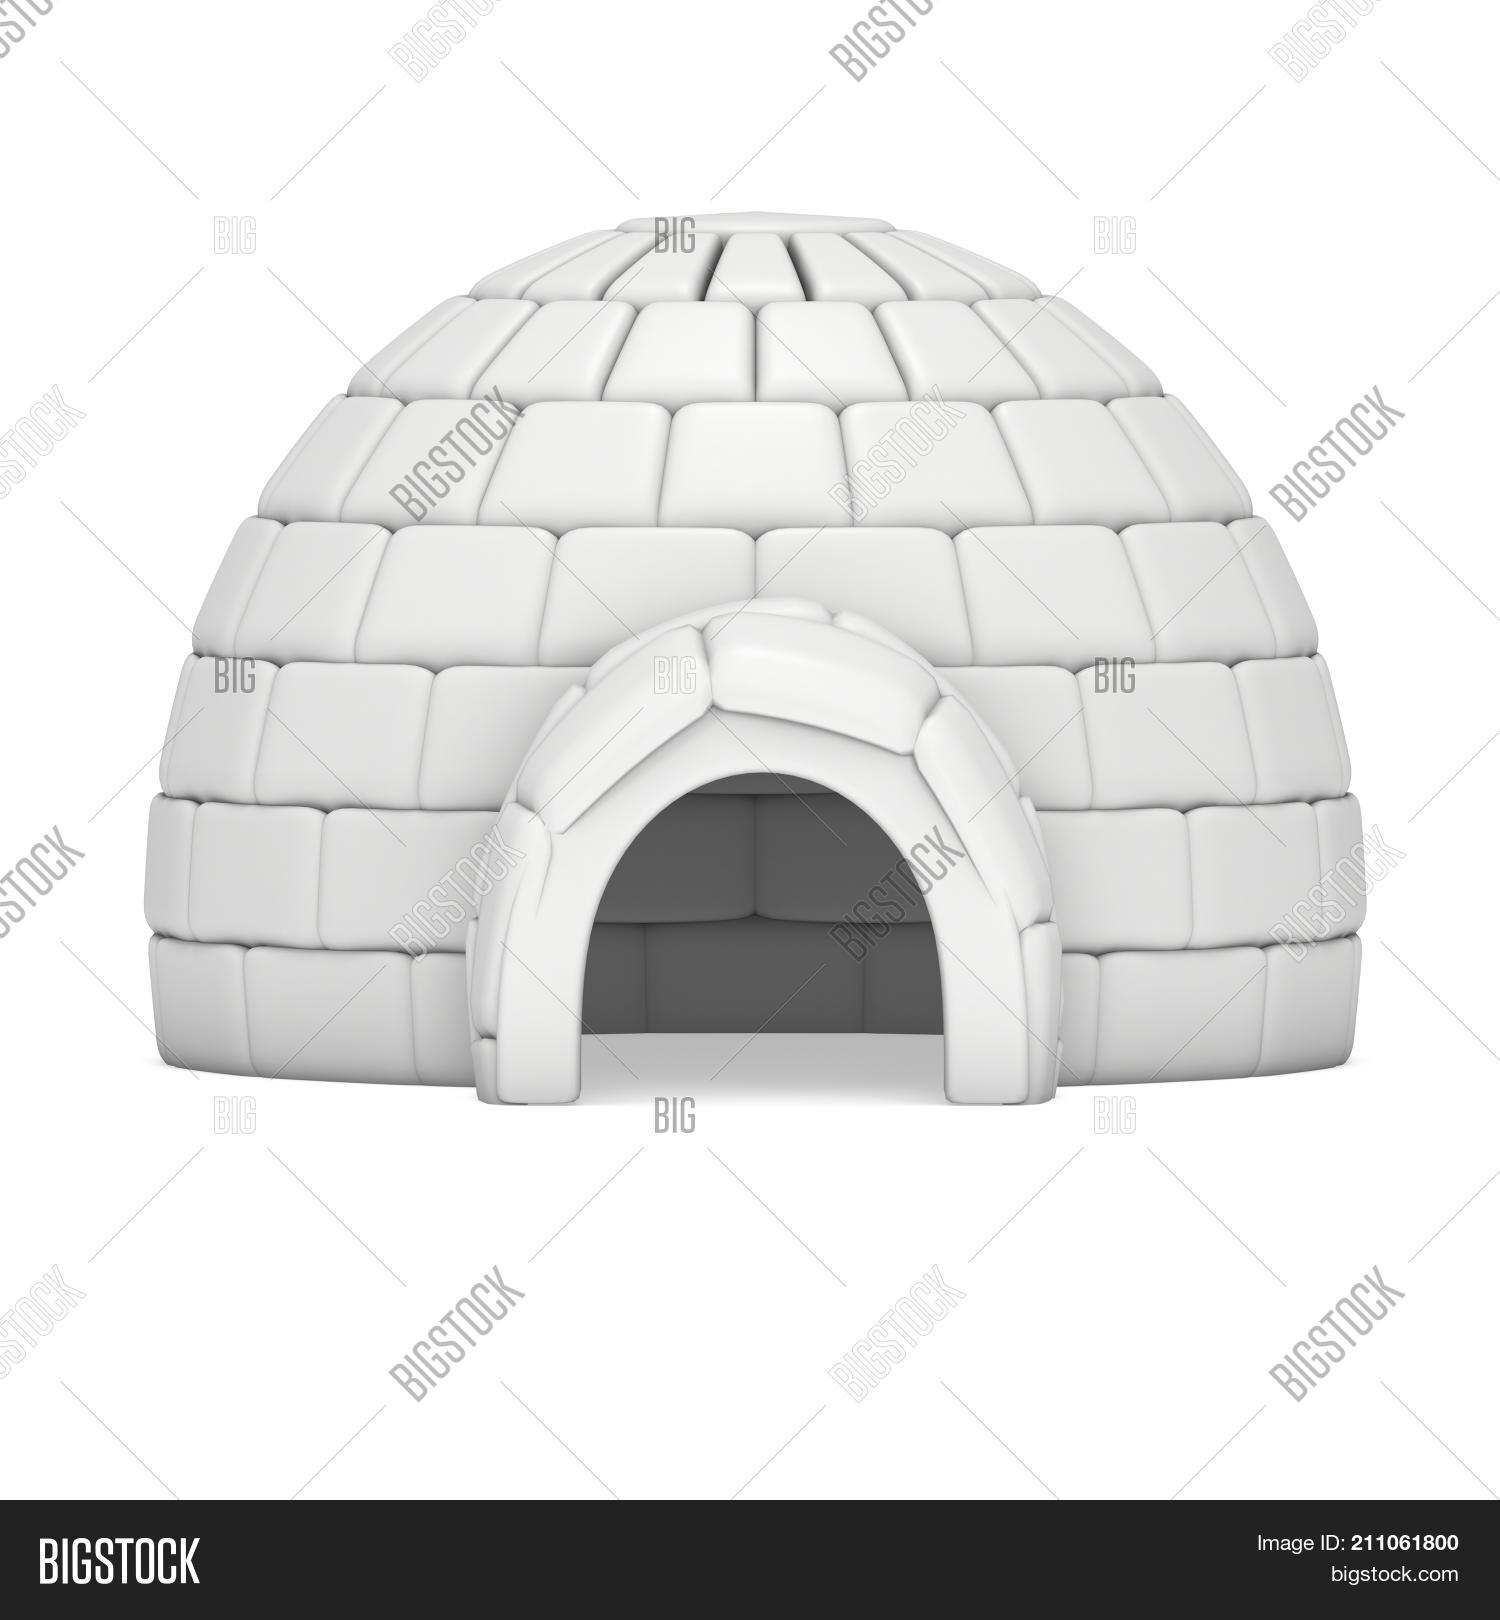 Igloo Icehouse Isolated On White Image & Photo | Bigstock